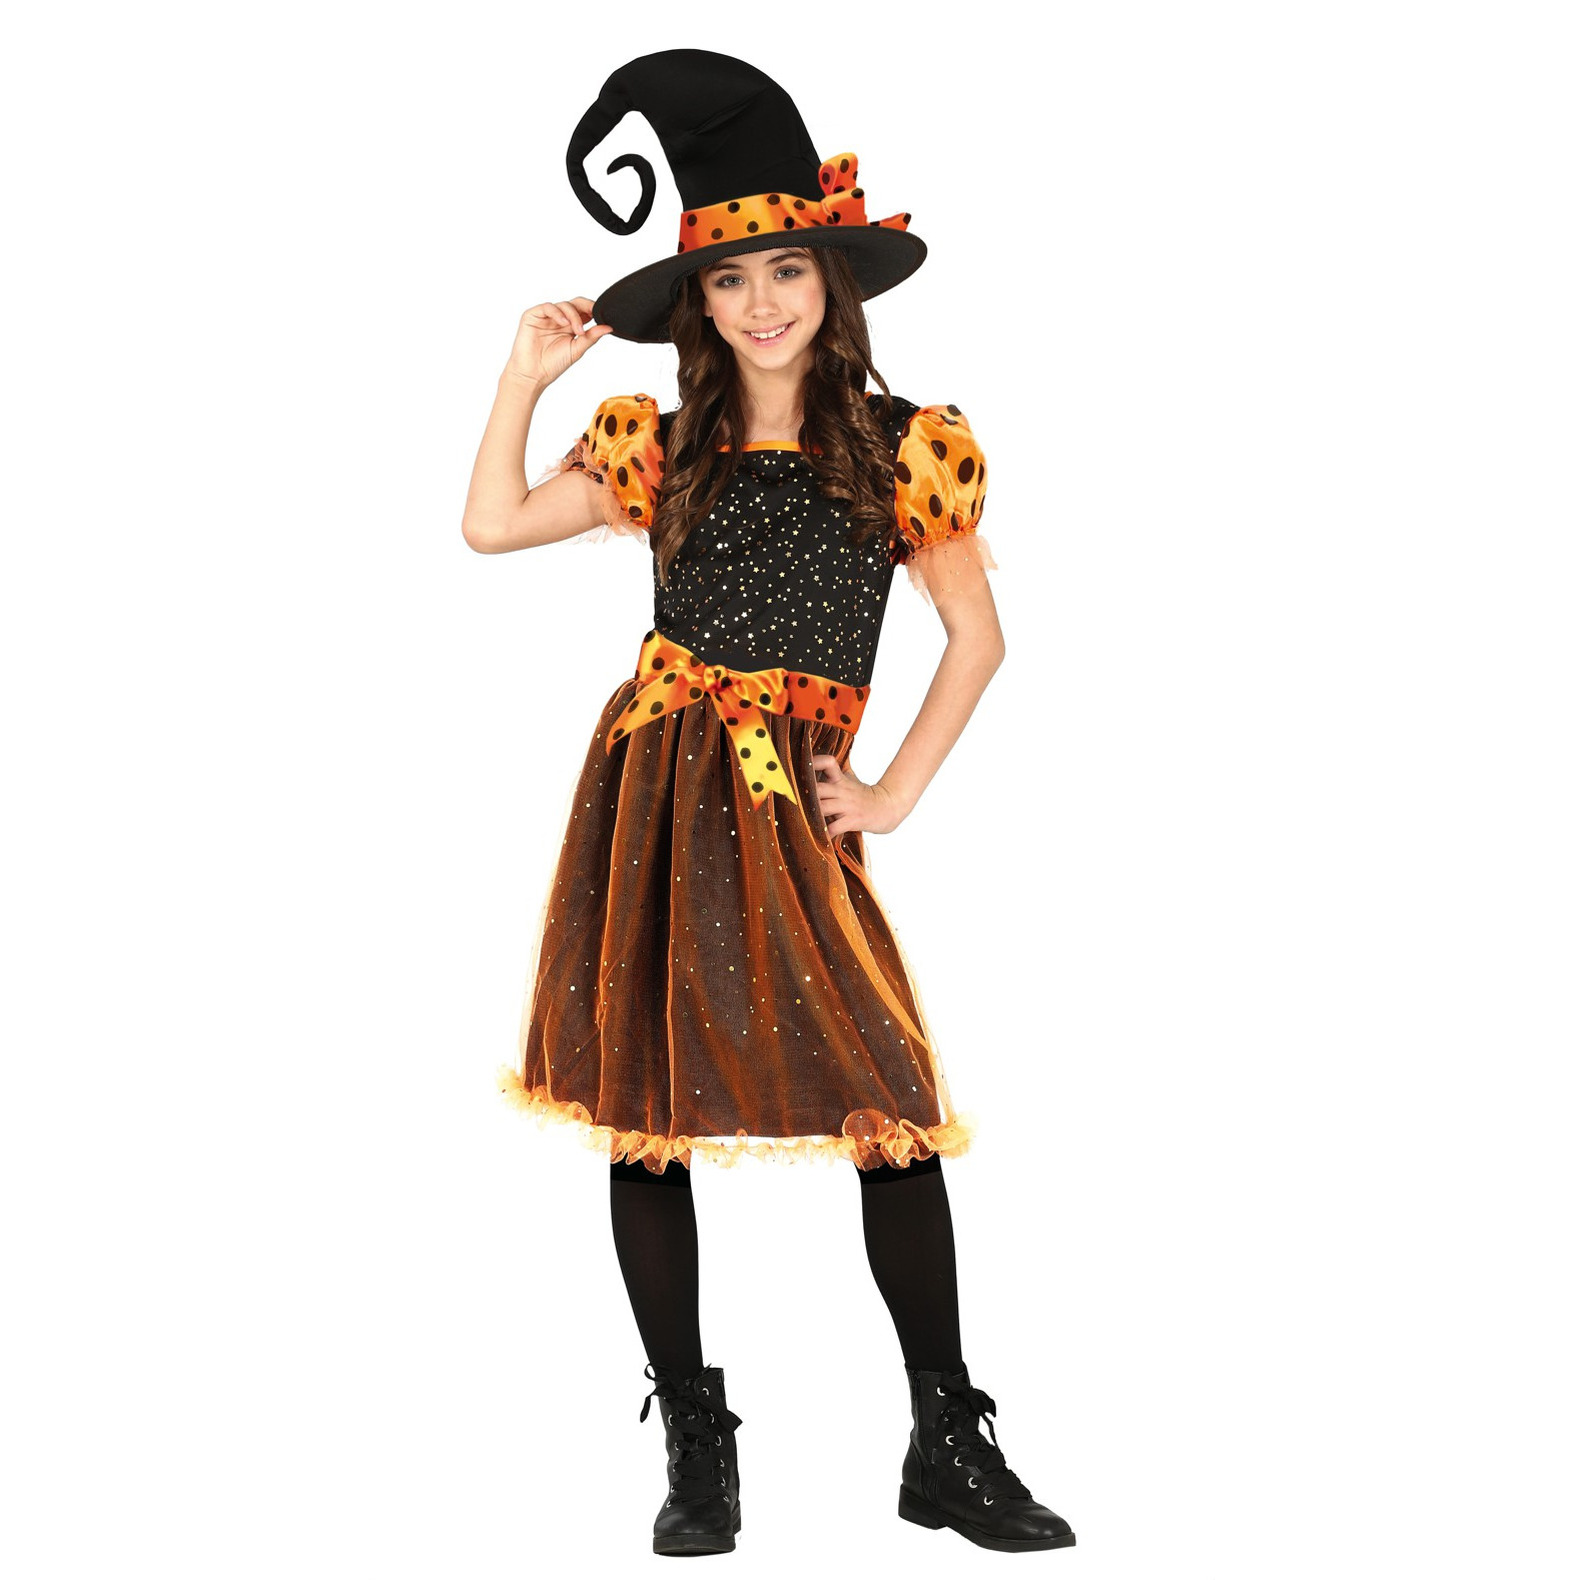 Heksen verkleed kostuum zwart/oranje voor meisjes